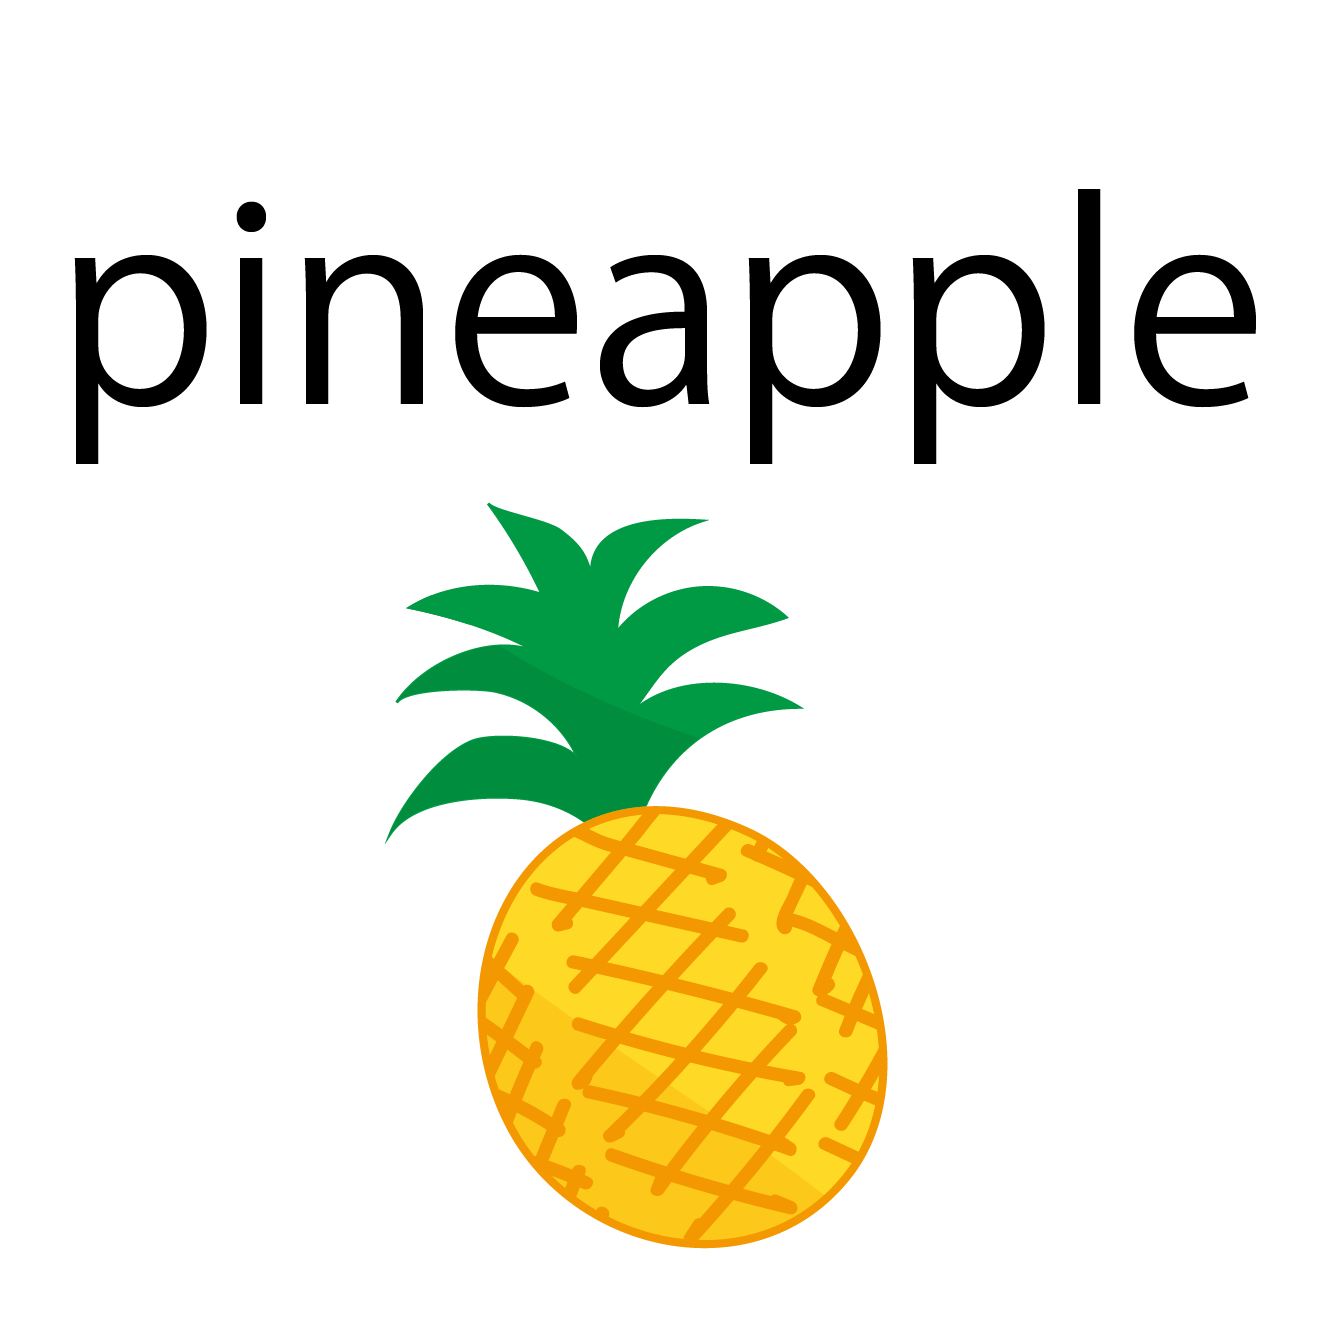 Pineapple パイナップル 英単語カードイラスト 子供用英単語フラッシュカード 商用フリー 無料 のイラスト素材なら イラストマンション